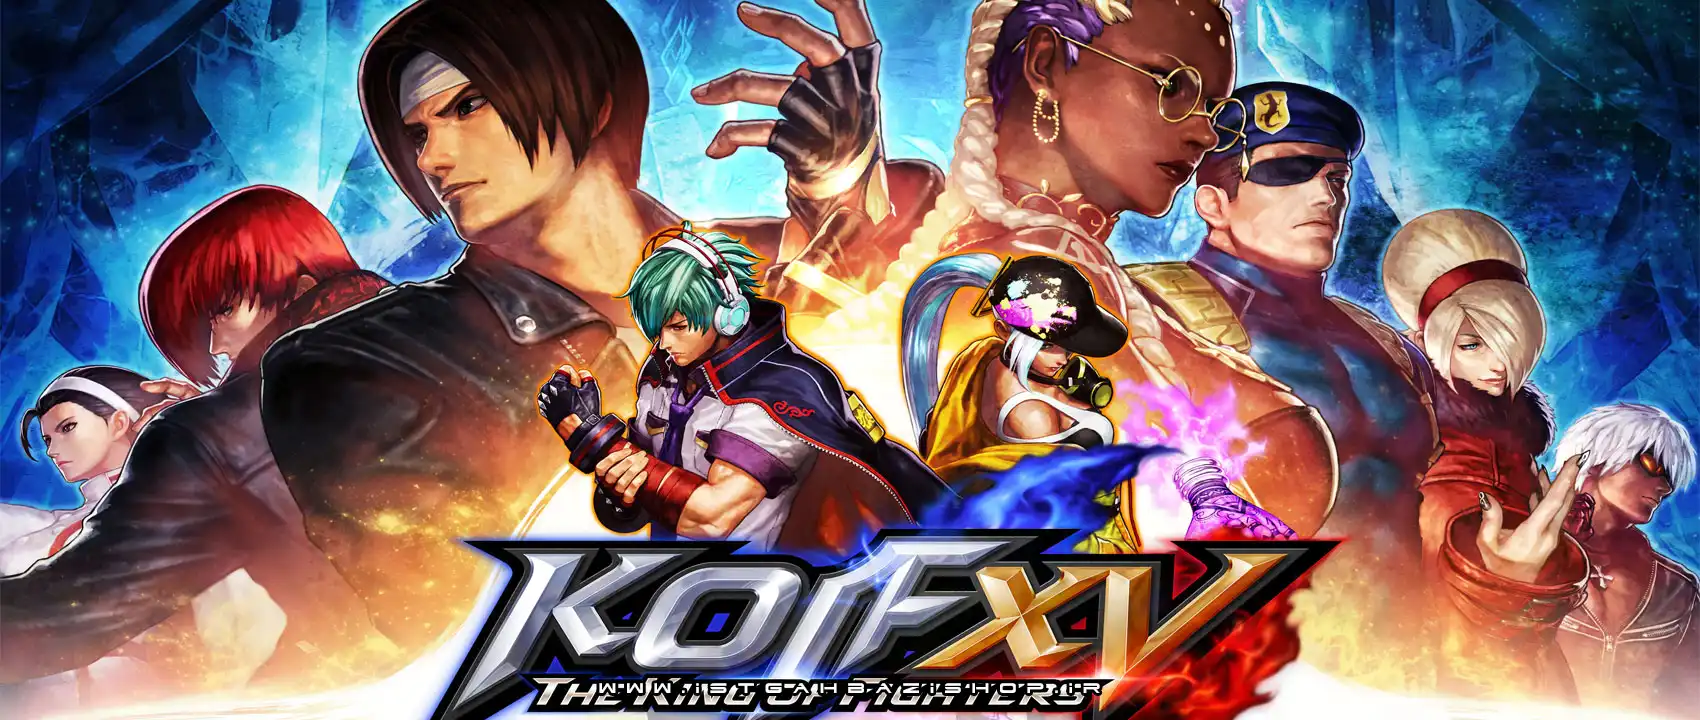 بازی The King of Fighters XV برای PS4